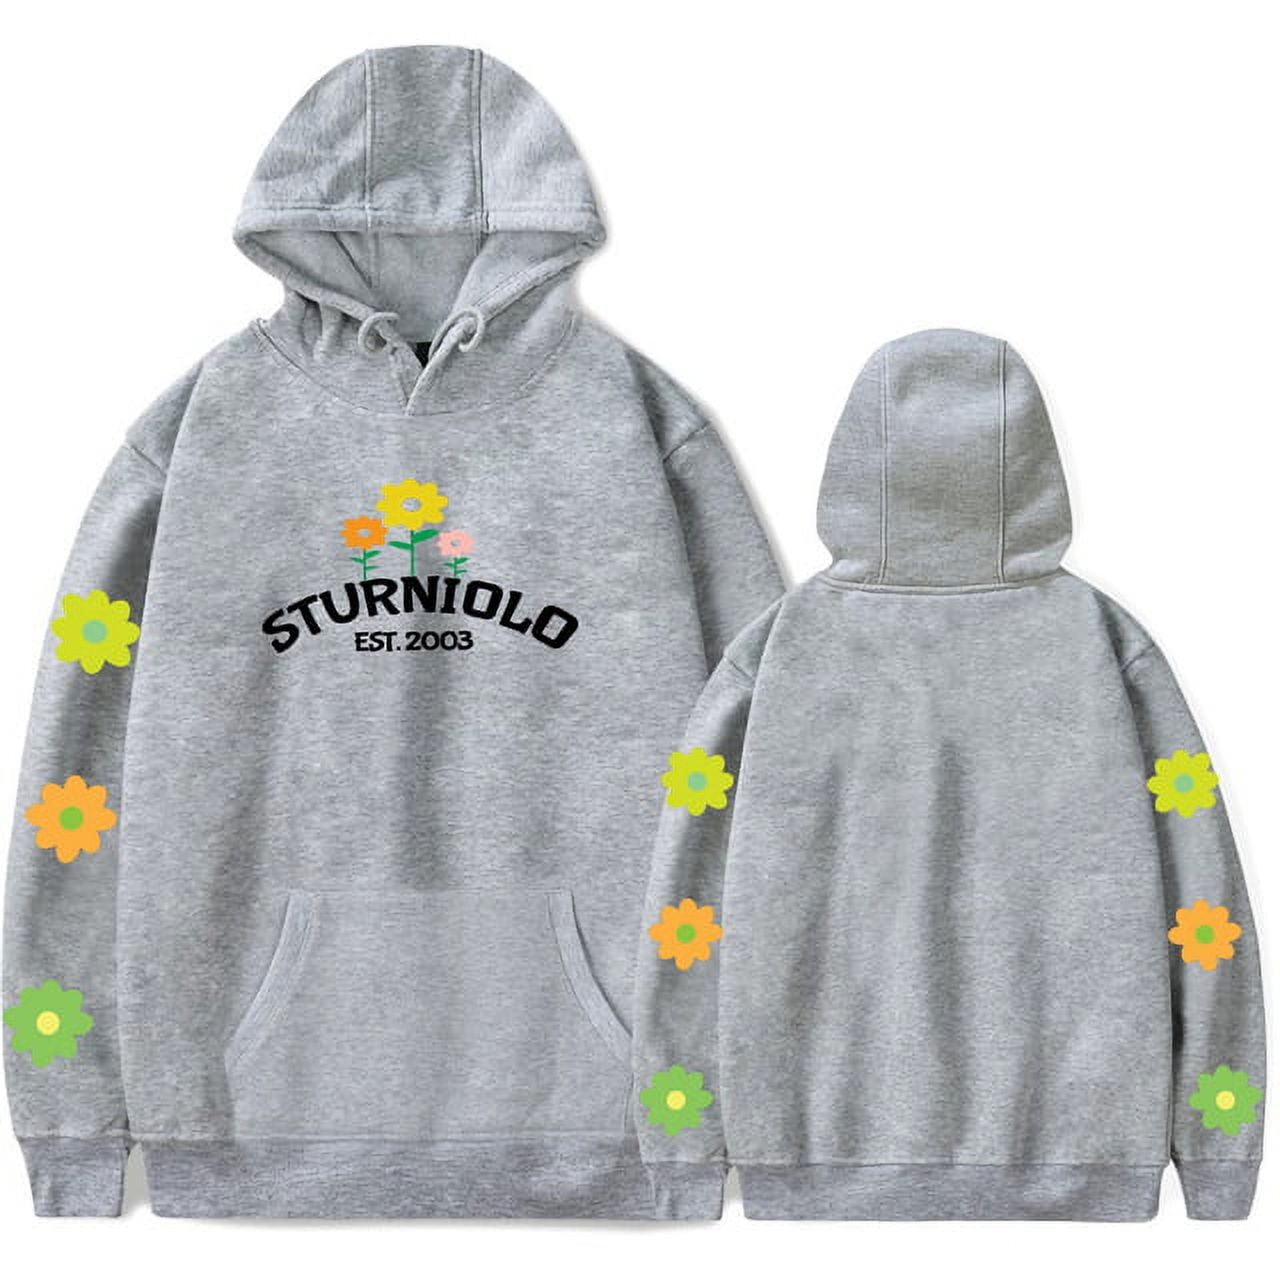 Sturniolo Tripletss Hoodie Men Women Hip Hop Sweatshirt Fashion Pullovers  Casual Style Streetwear 